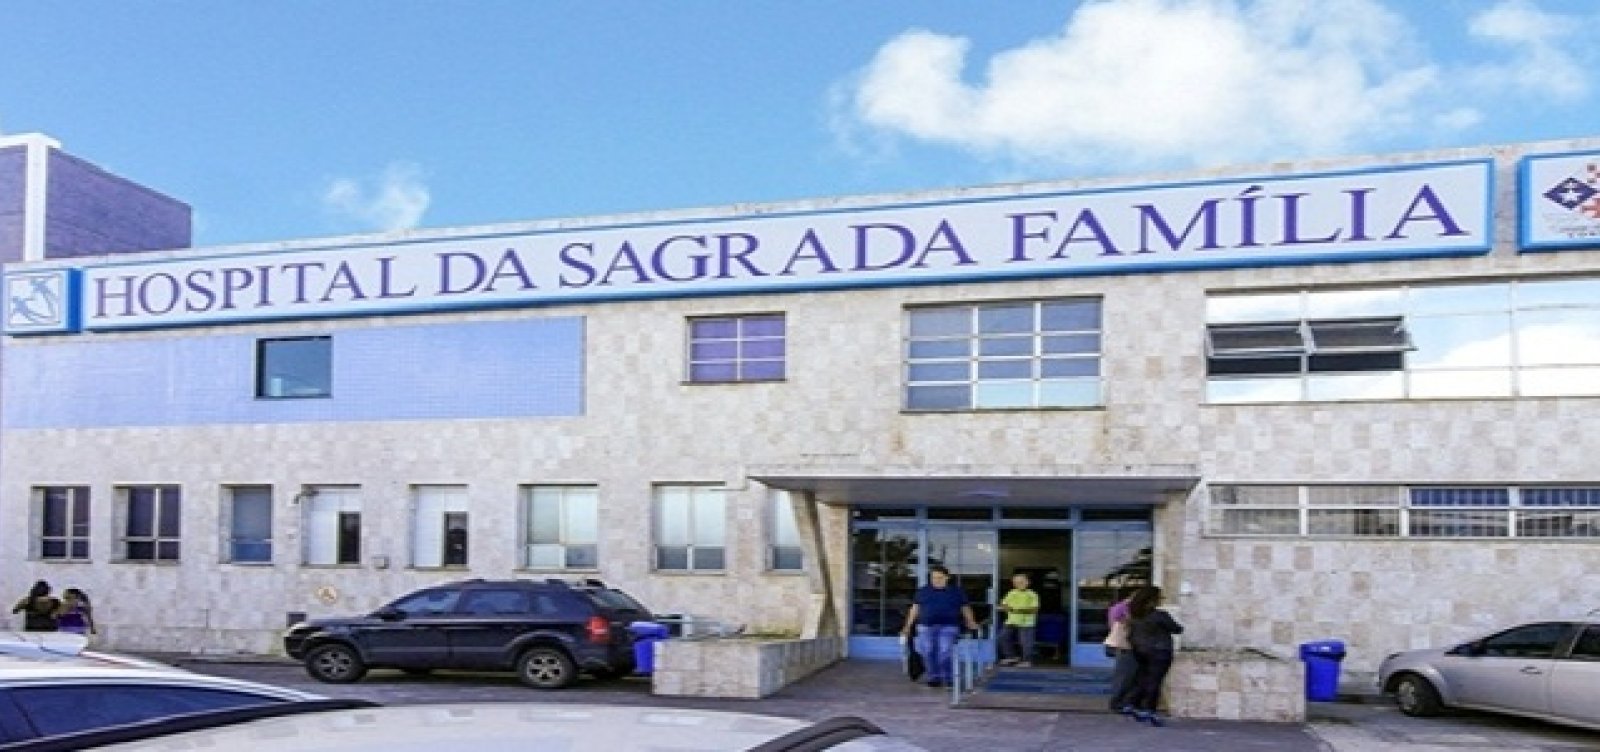 Prefeitura vai assumir Hospital Sagrada Família e OSID deve administrar, diz Léo Prates